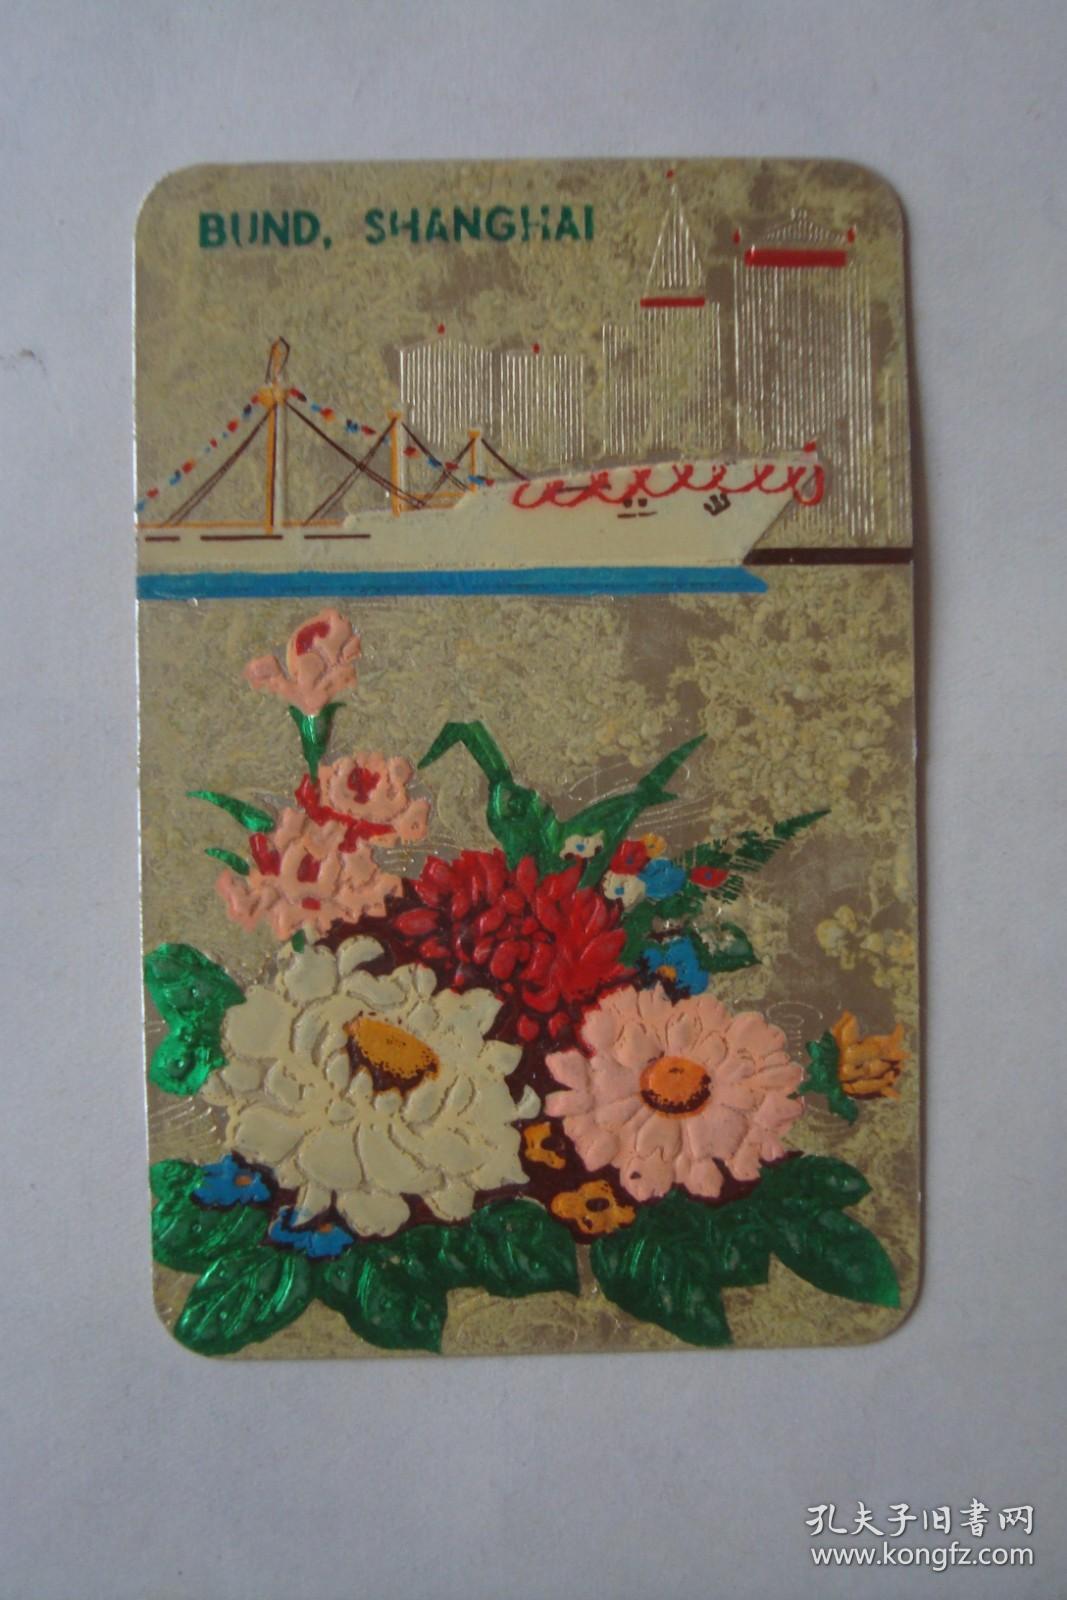 1977年    年历卡   花卉   BUND  SHANGHAI      凹凸版   中波轮船股份公司